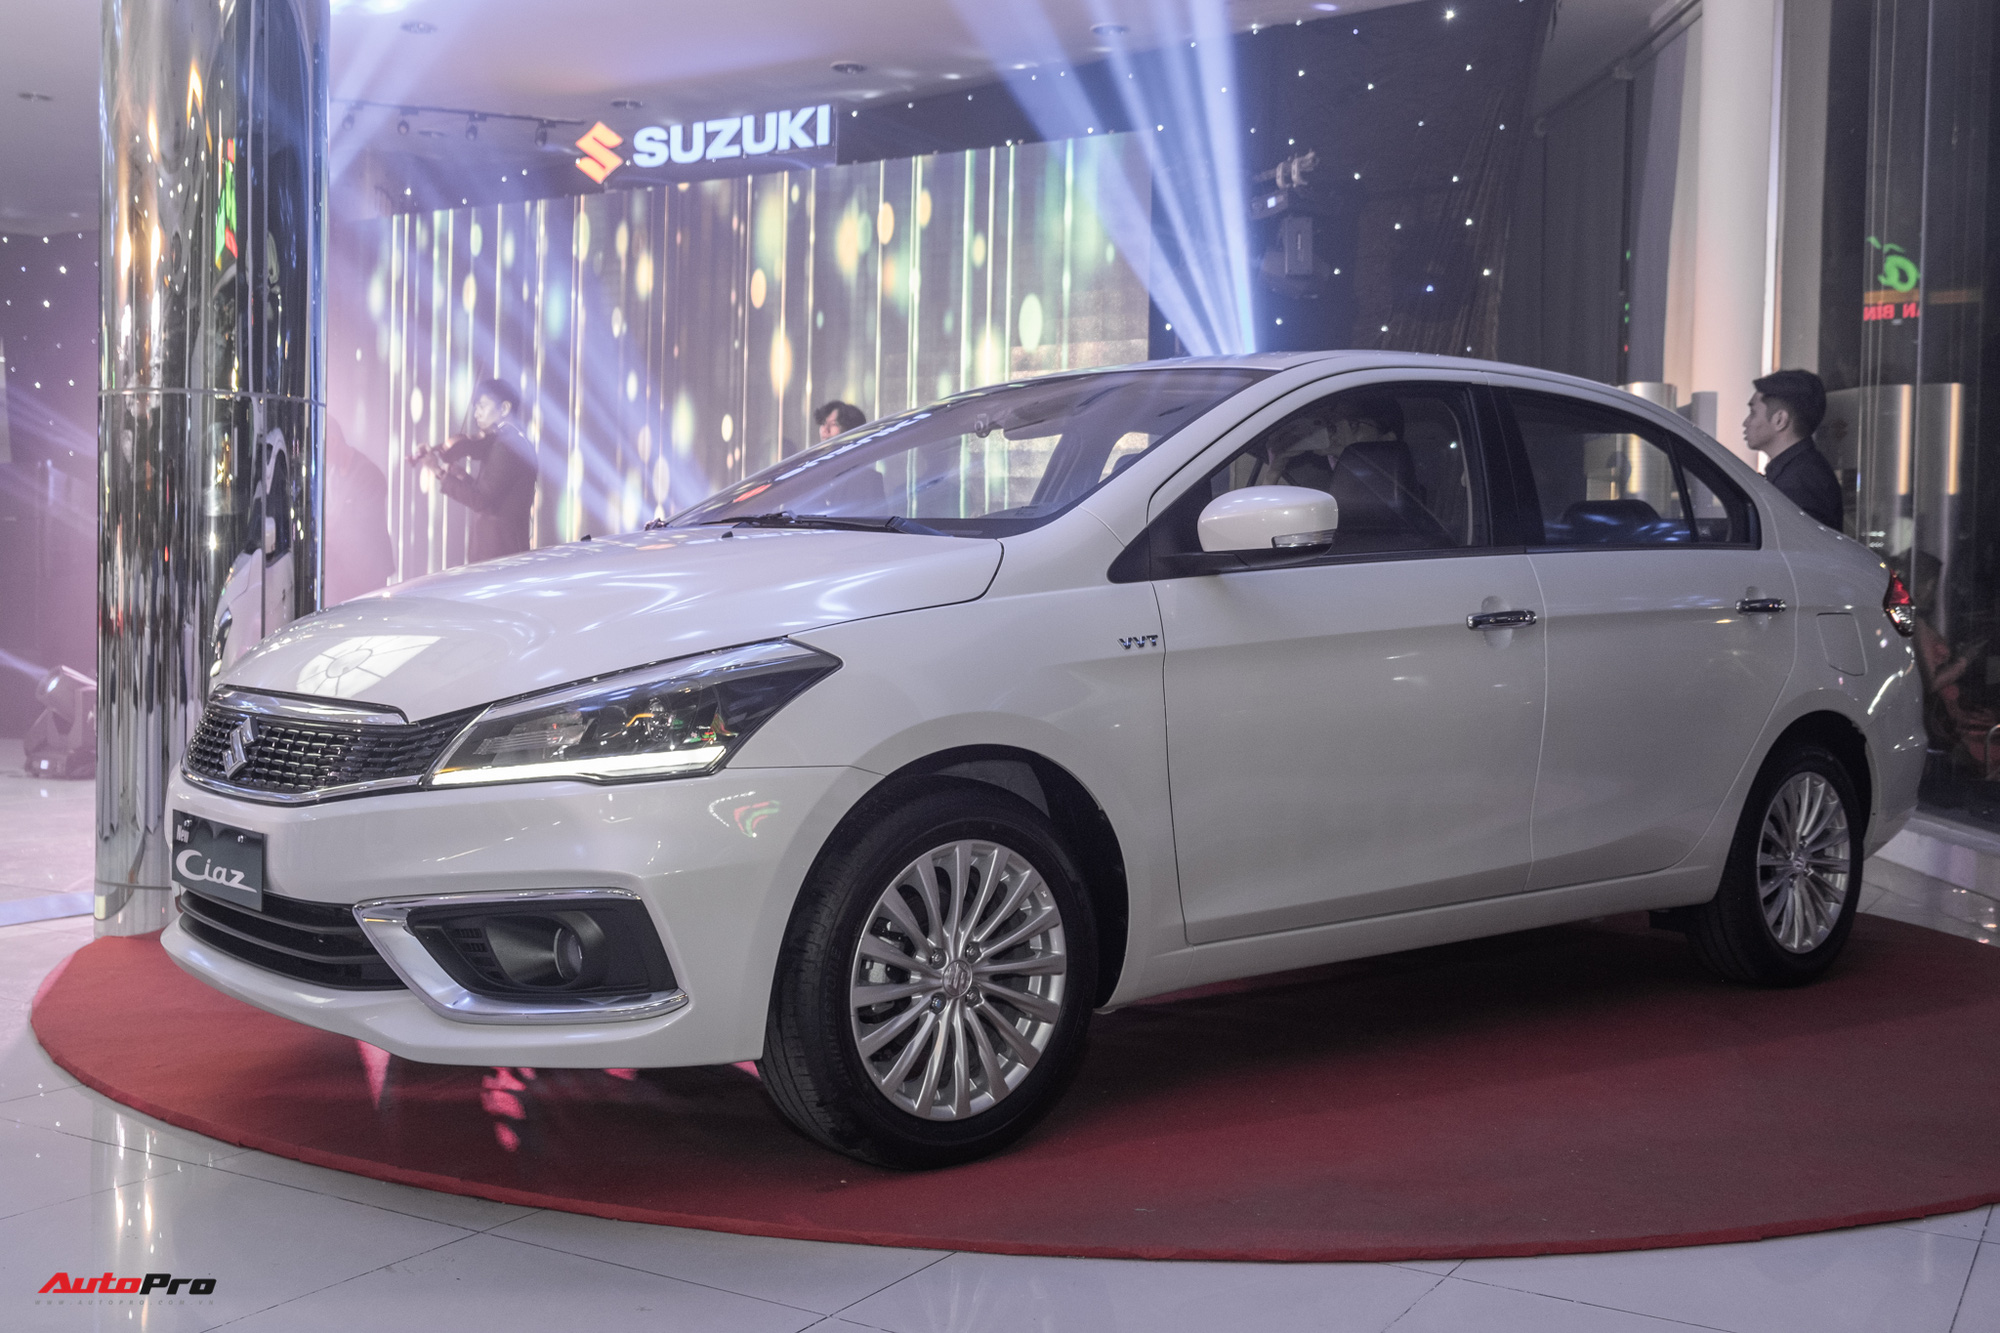 Khám phá Suzuki Ciaz 2020 giá 529 triệu đồng tại Việt Nam: Thiếu nhiều tính năng cơ bản - Ảnh 1.